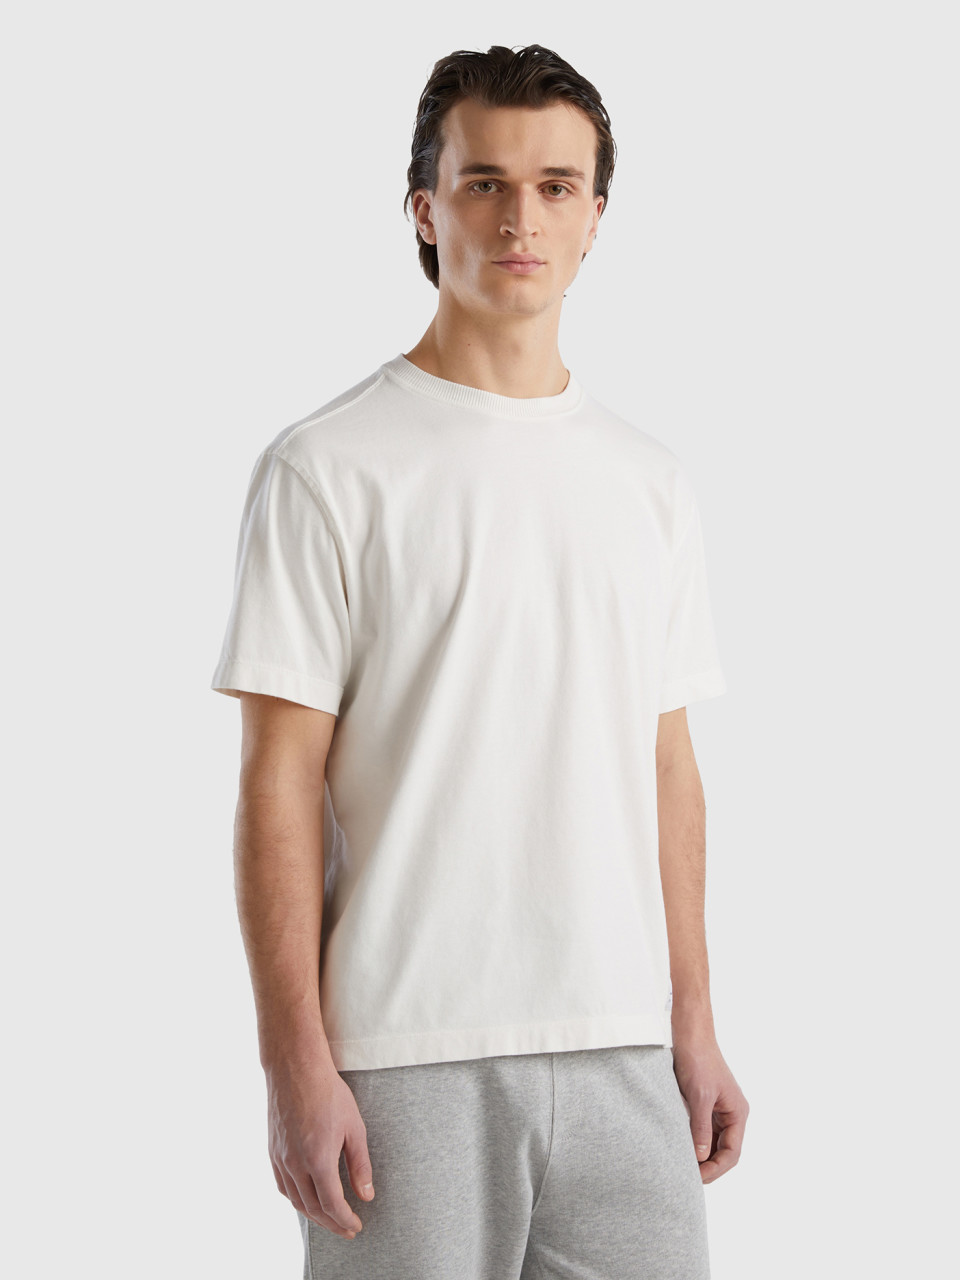 Benetton, Camiseta De Cuello Redondo De 100 % Algodón Orgánico, Blanco Crema, Hombre